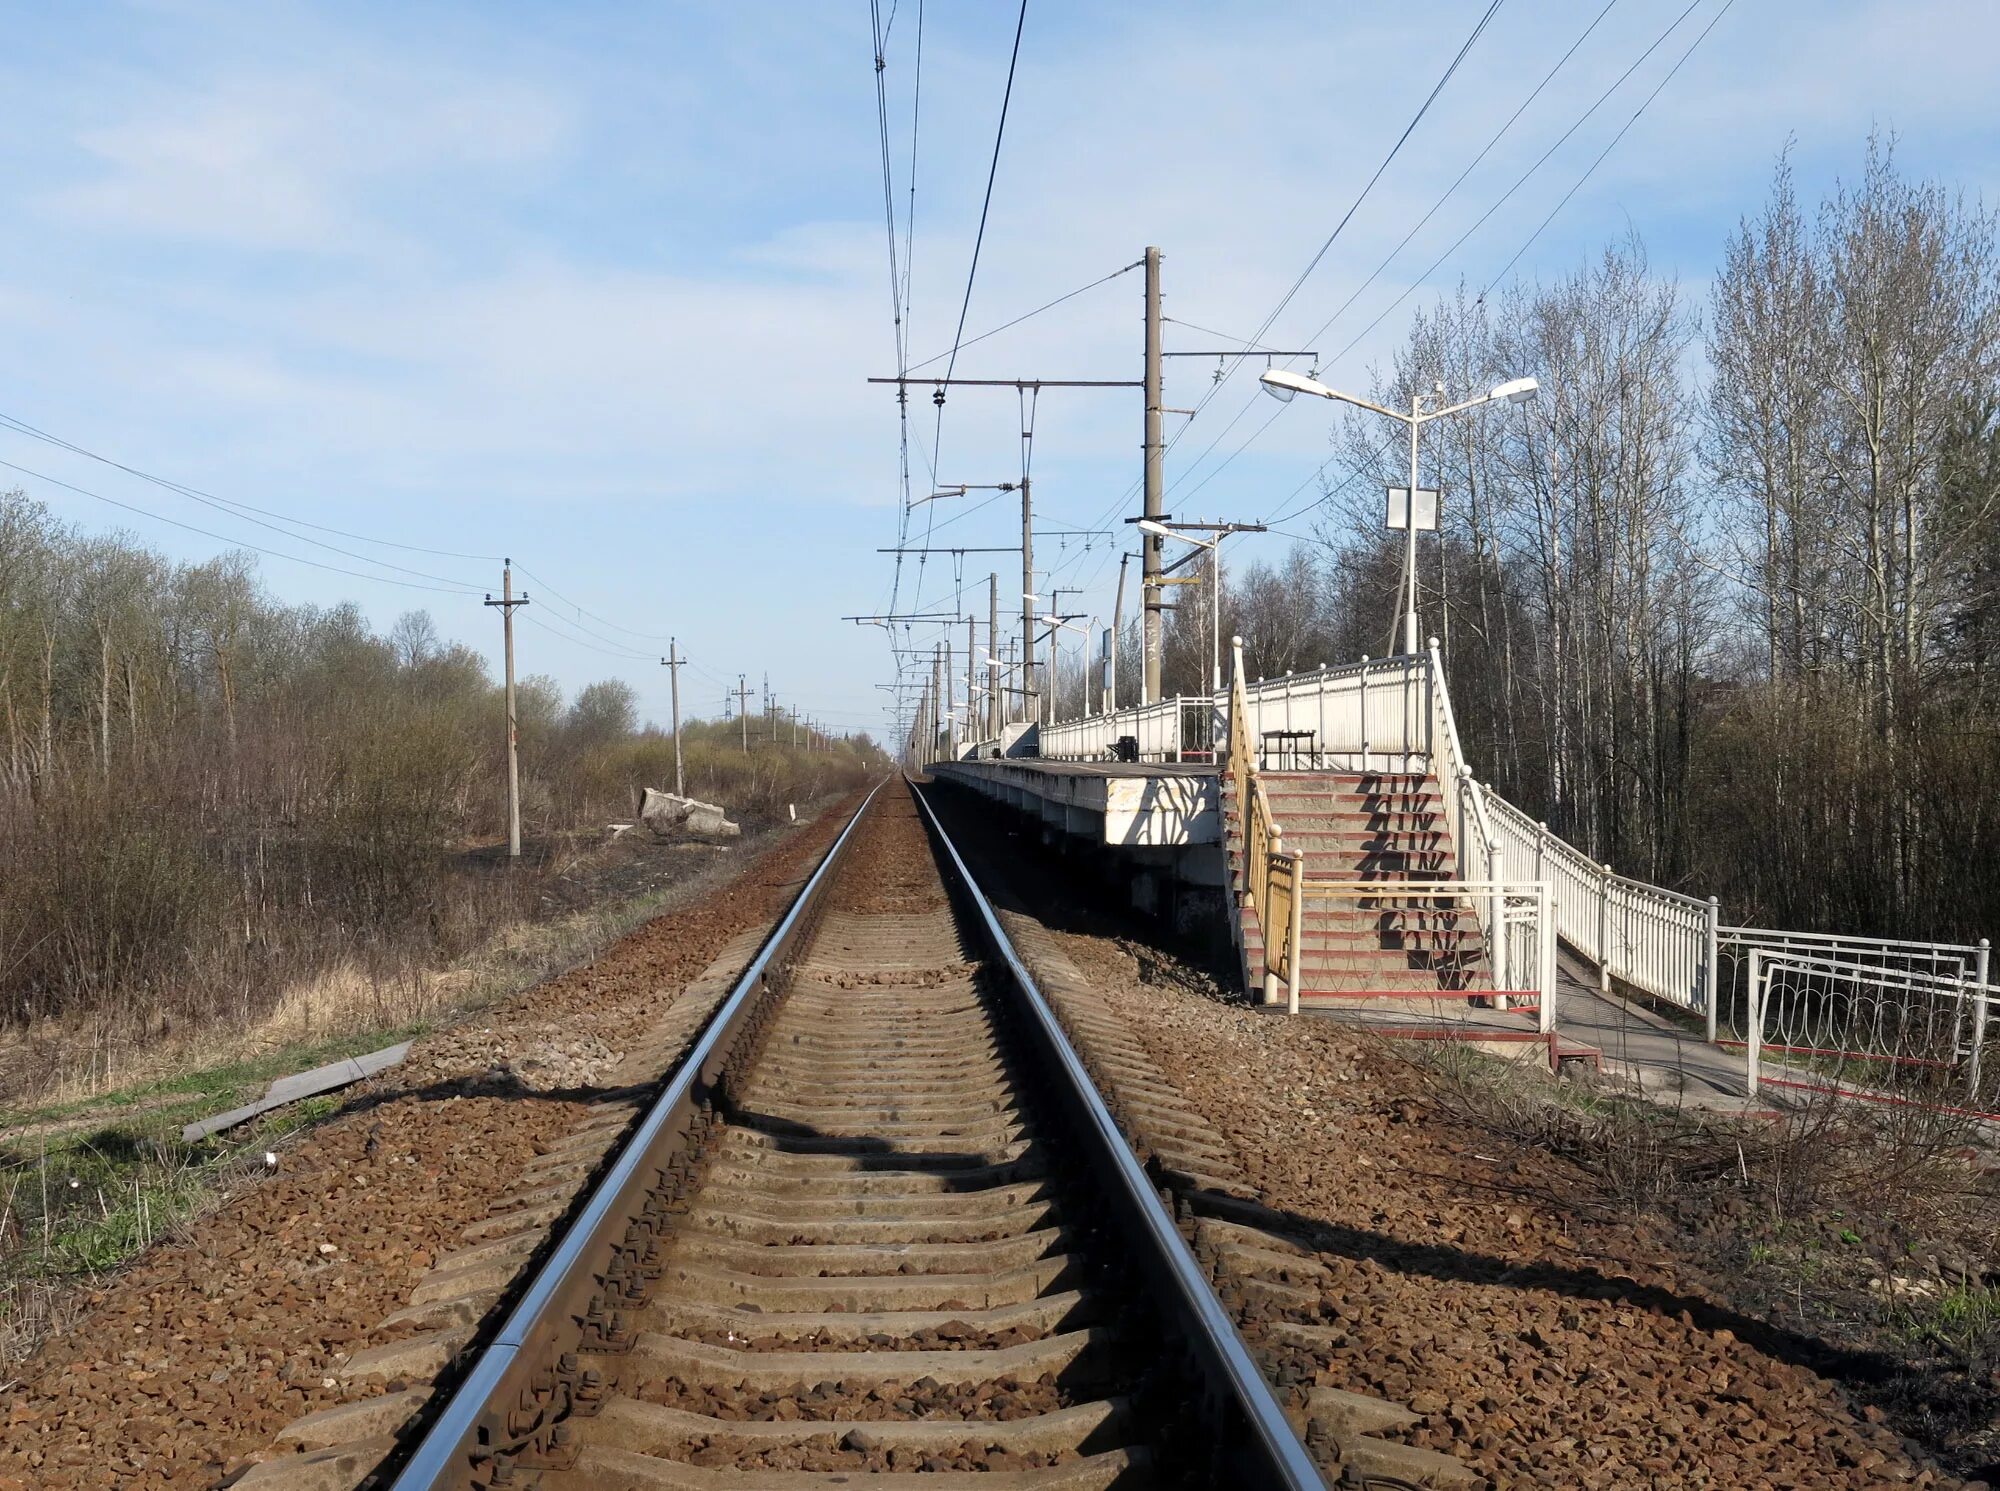 169 км. 36 Км станция. Платформа 36 км. Станция 169 км Новгородская область. Остановочный пункт 3 км.